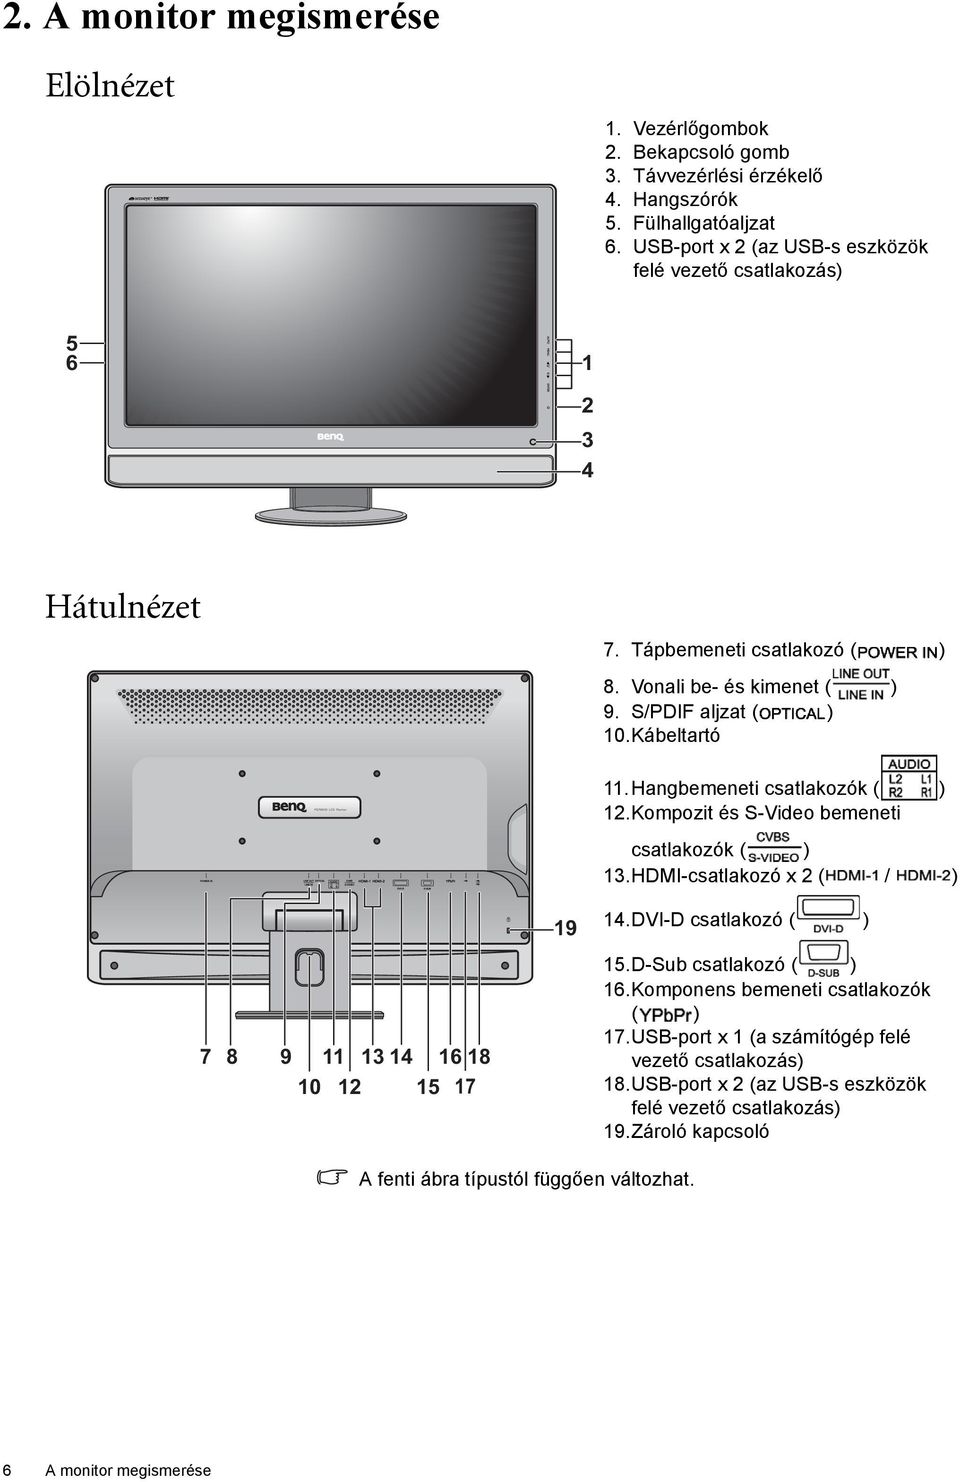 Hangbemeneti csatlakozók ( ) 12.Kompozit és S-Video bemeneti csatlakozók ( ) 13.HDMI-csatlakozó x 2 ( / ) 19 14.DVI-D csatlakozó ( ) 7 8 9 11 13 14 16 18 10 12 15 17 15.